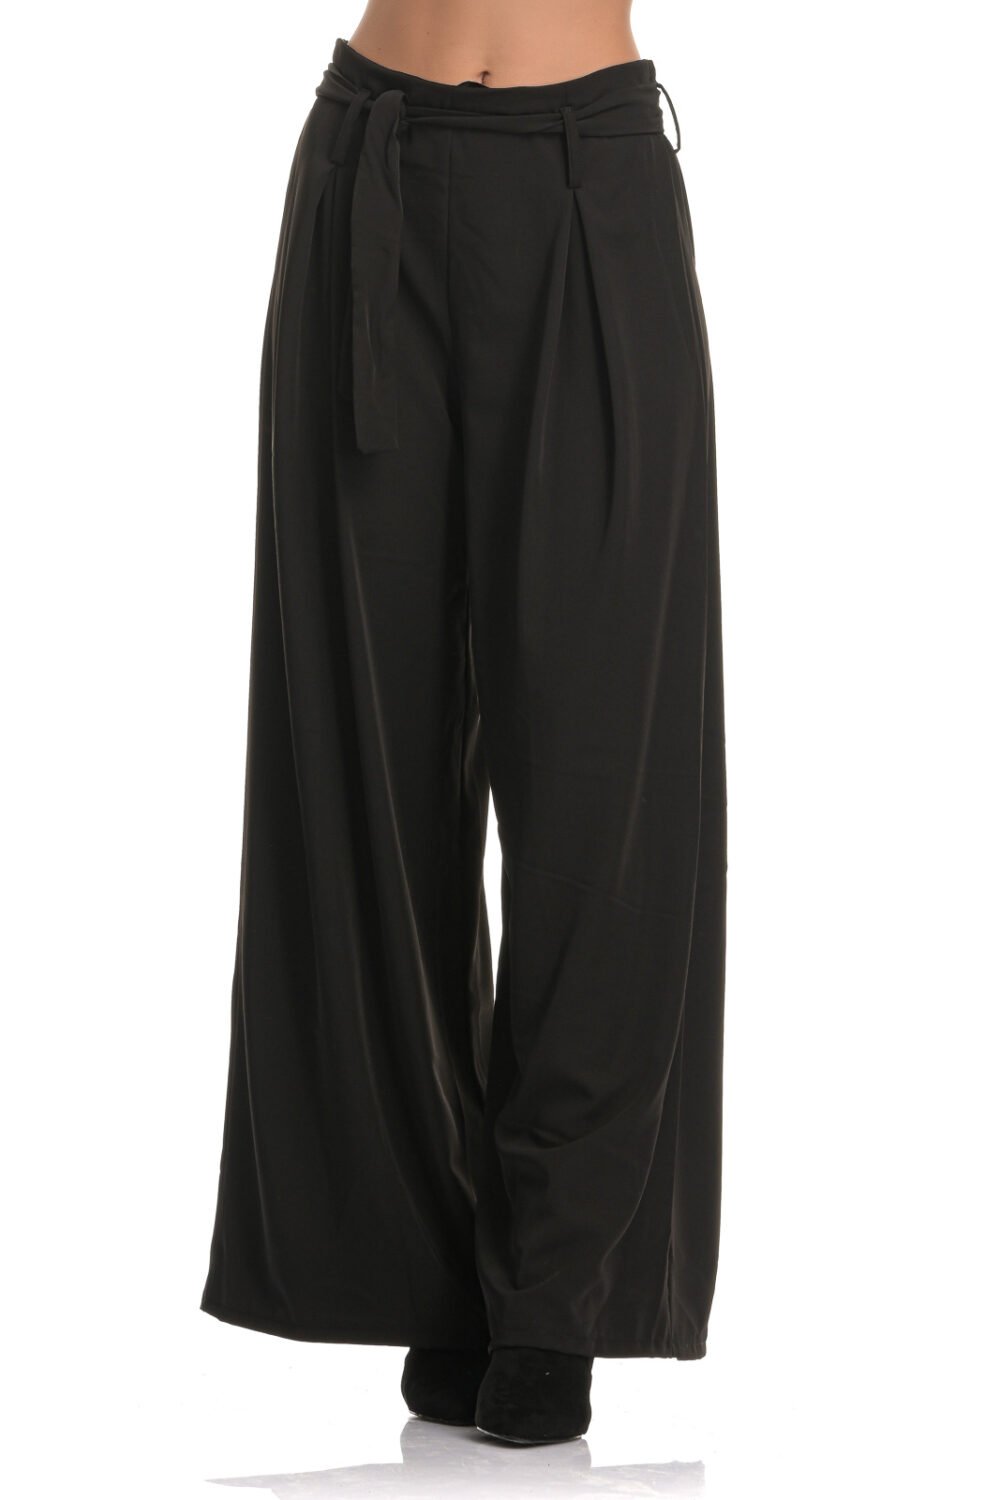 Ψηλόμεση παντελόνα με ζώνη σε μαύρο χρώμα